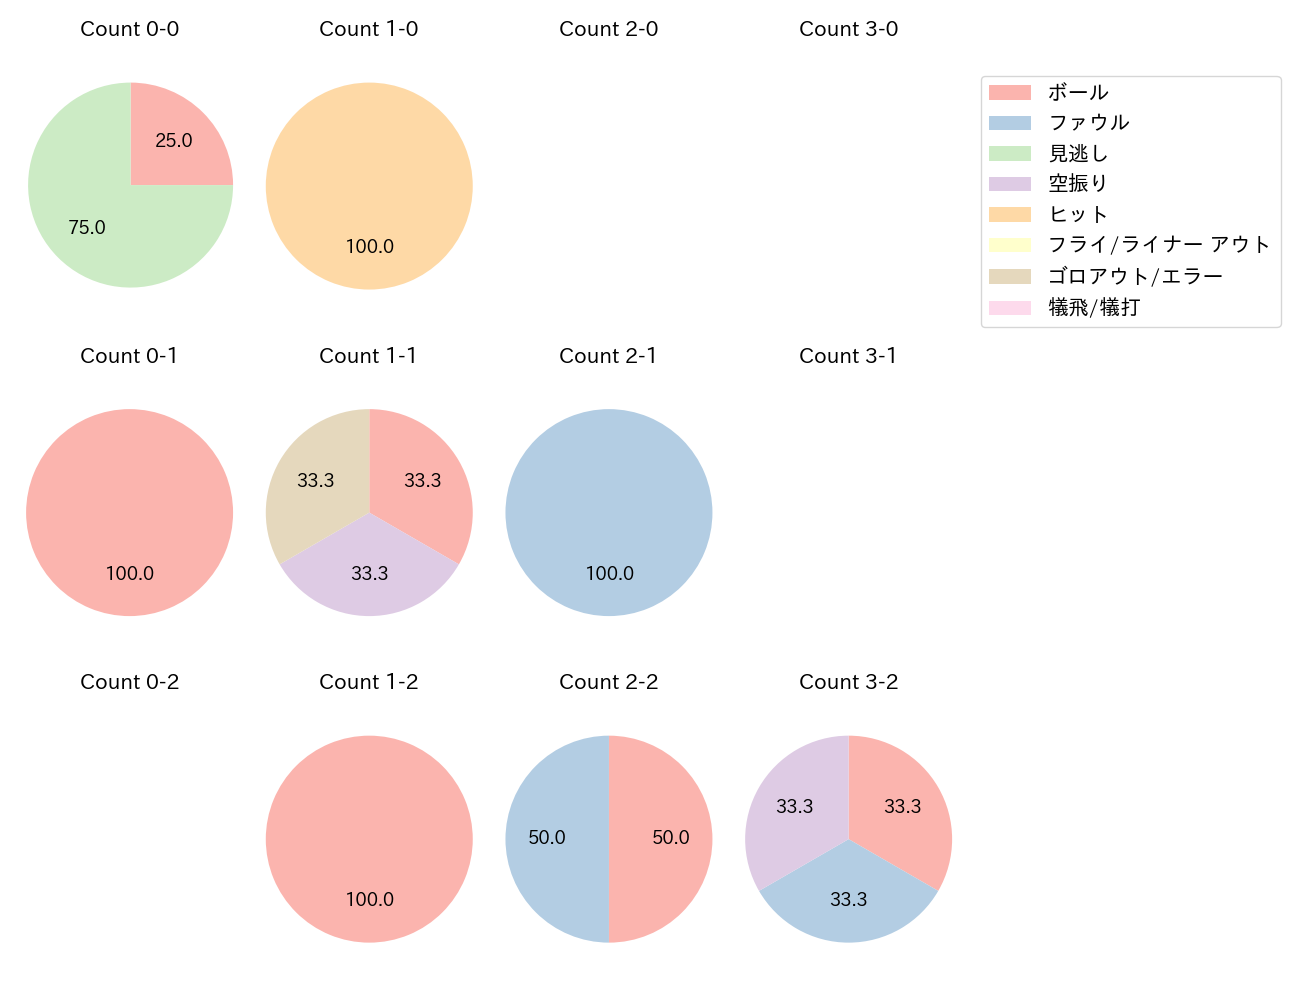 和田 康士朗の球数分布(2021年6月)